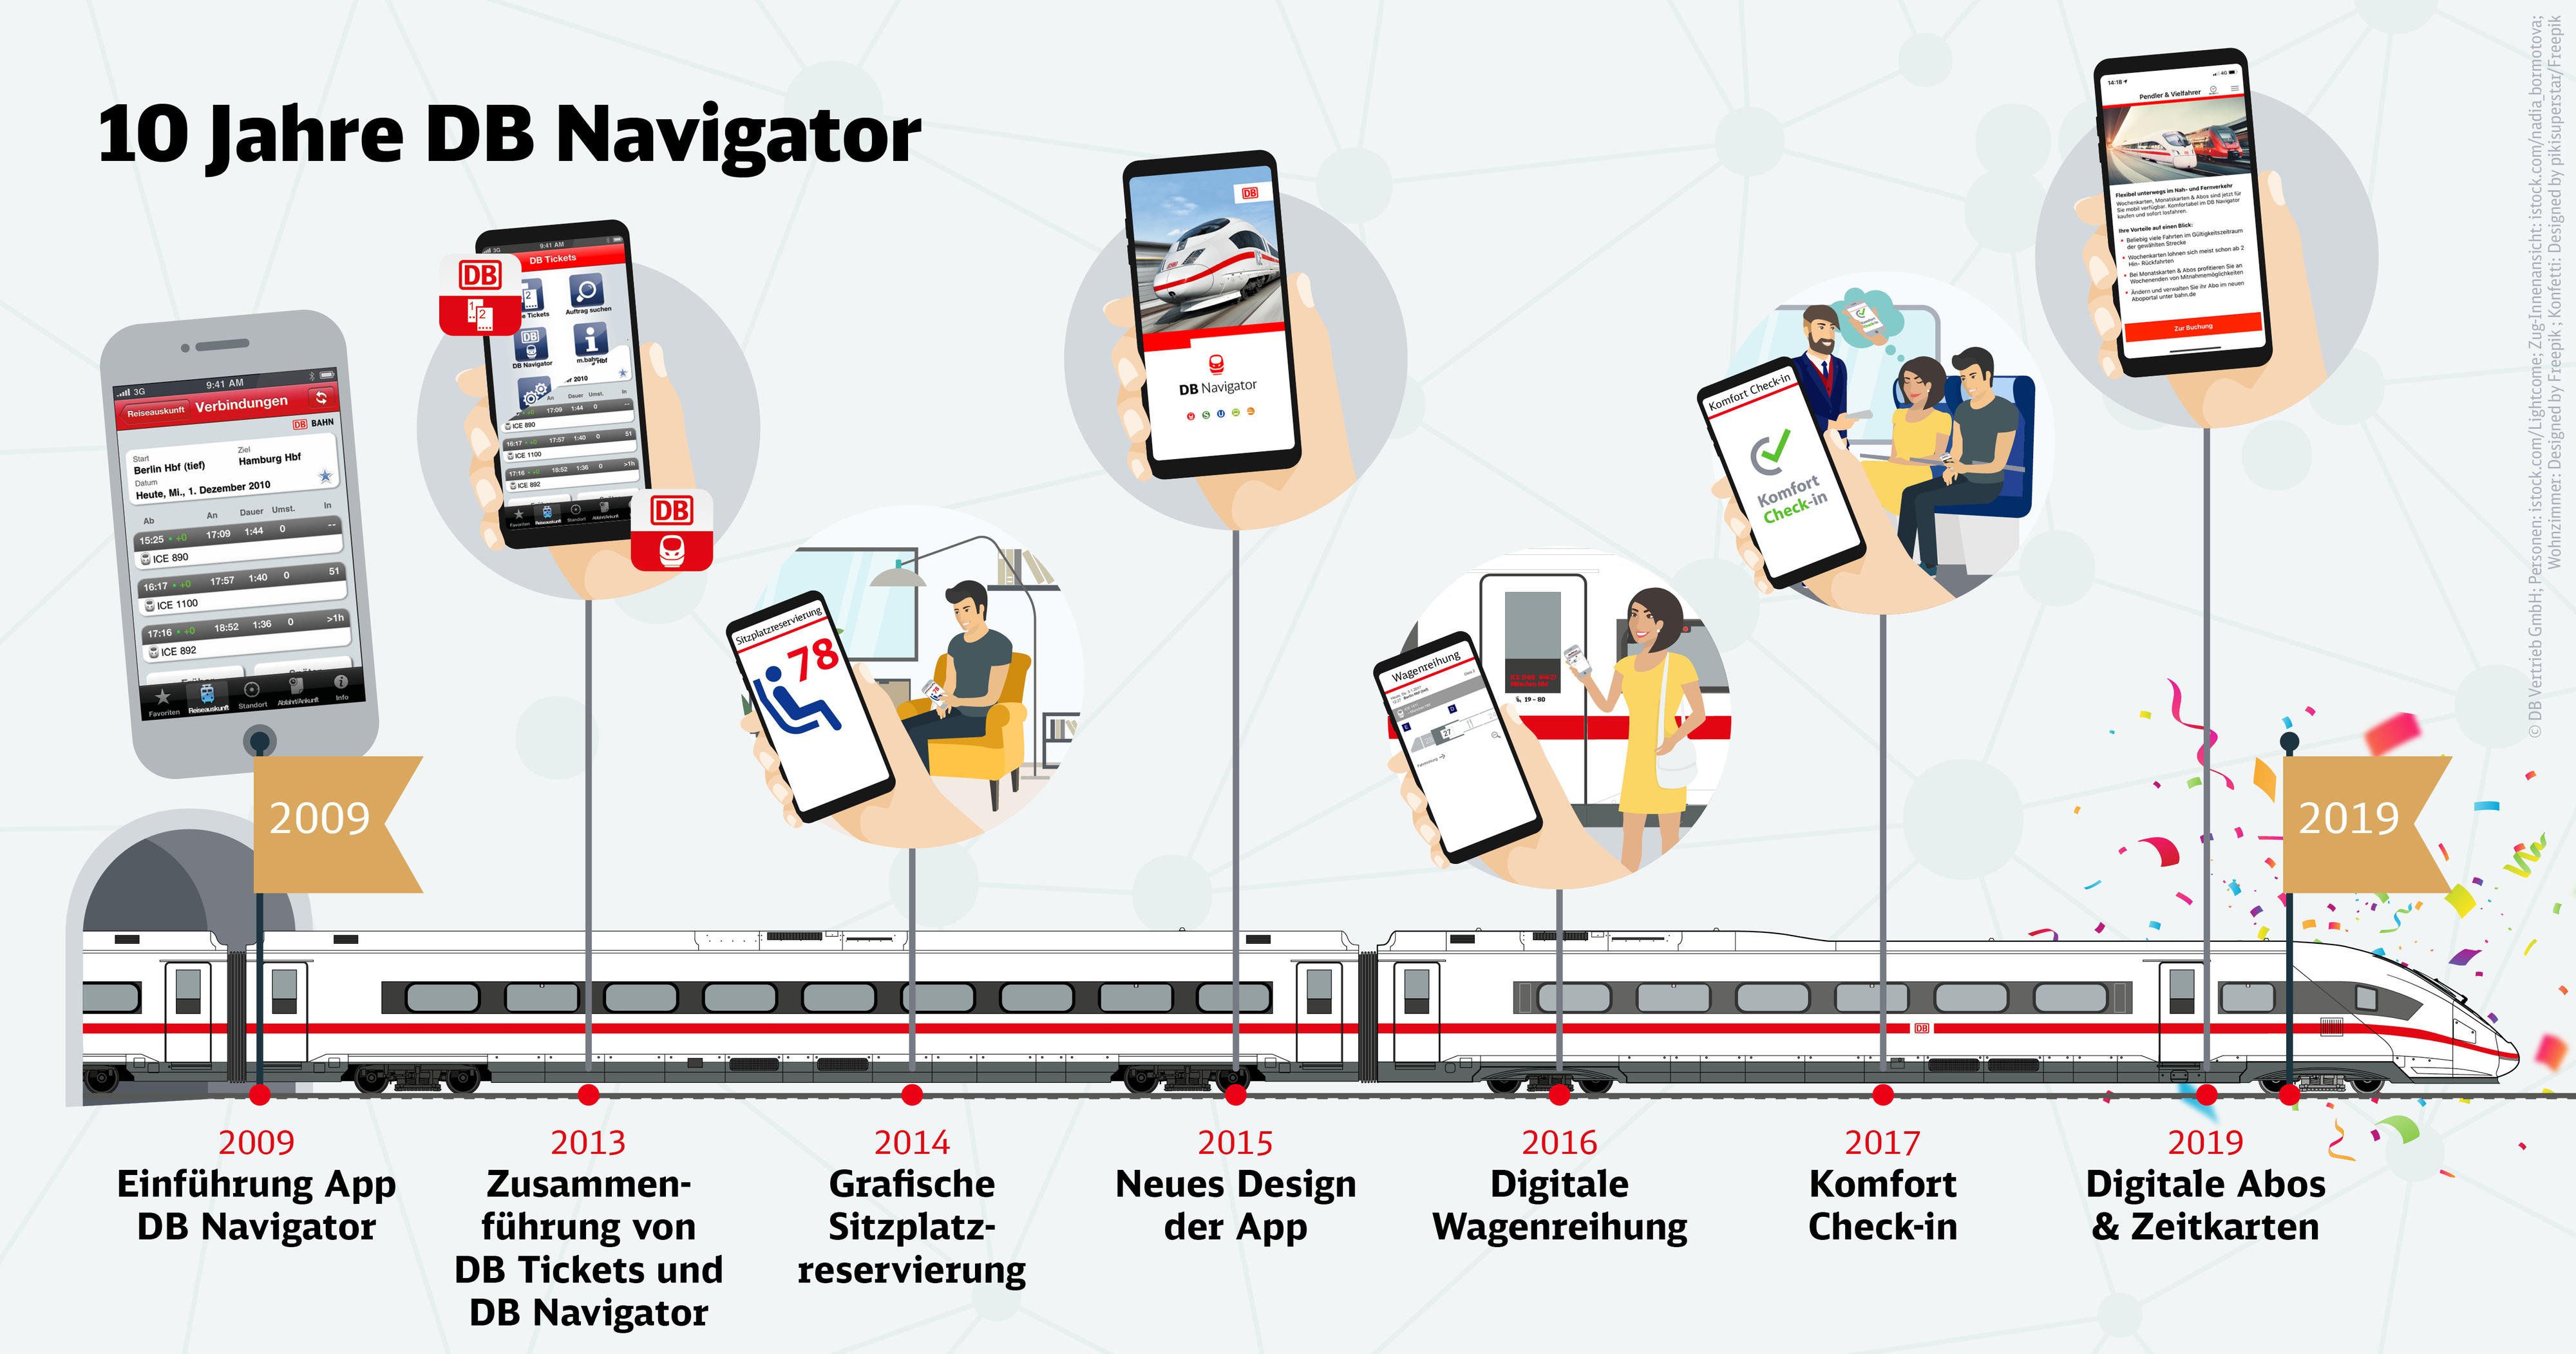 10 Jahre DB Navigator 105 Millionen HandyTickets